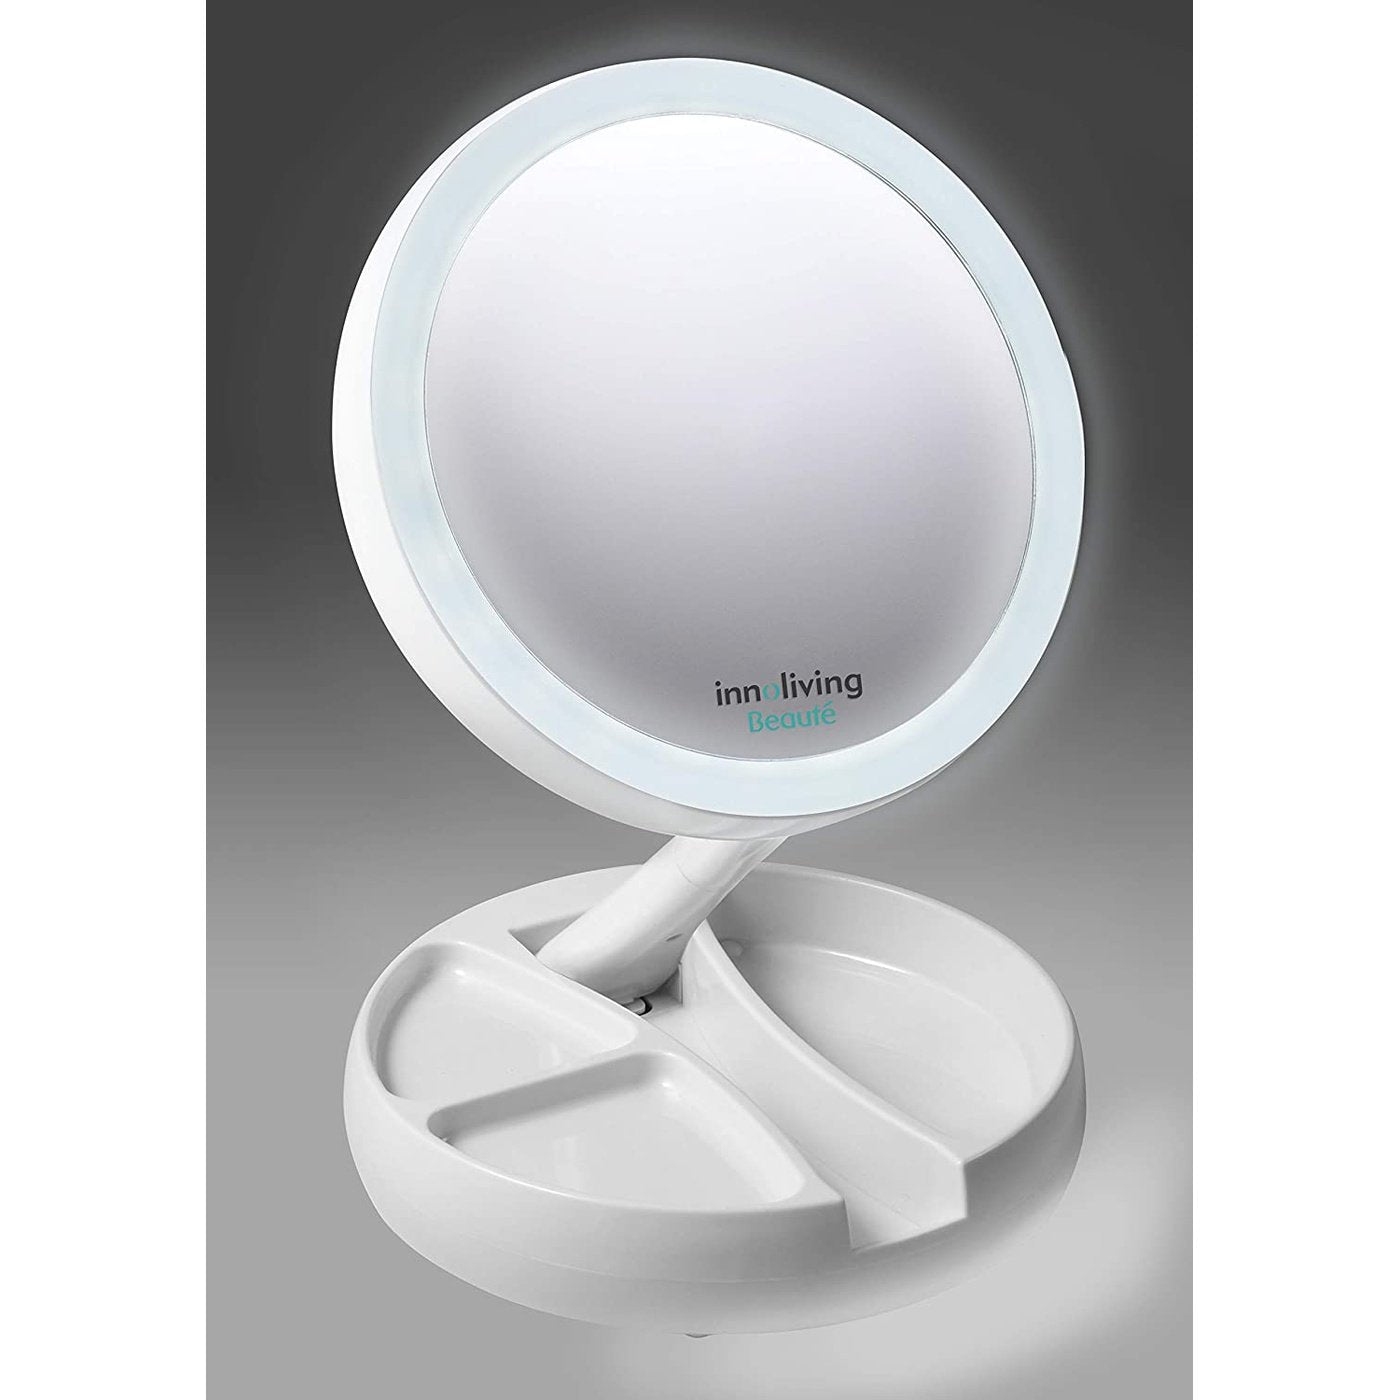 Specchio luminoso doppio lato pieghevole ingrandimento 5x, Innoliving INN-805